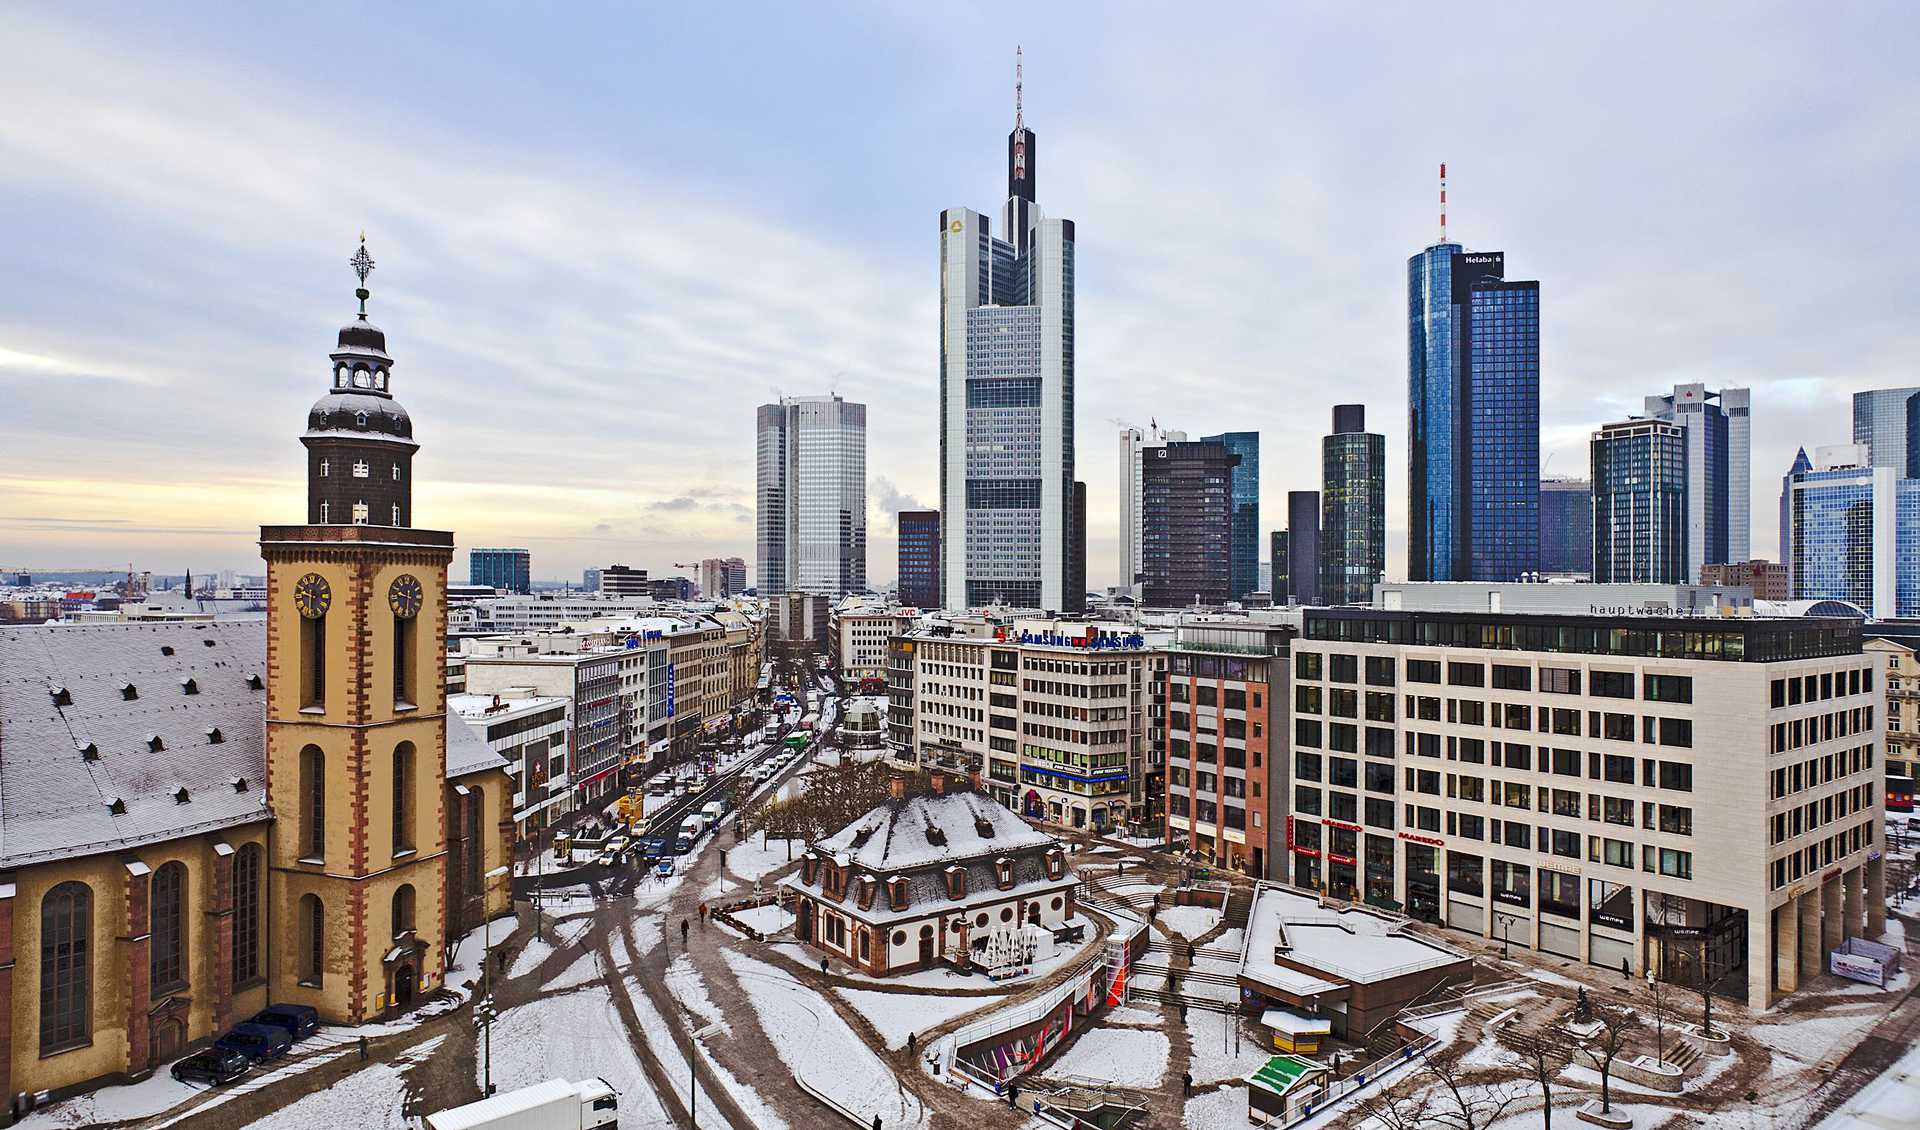 Франкфурт-на-Майне в январе: зимняя сказка деловой столицы Германии